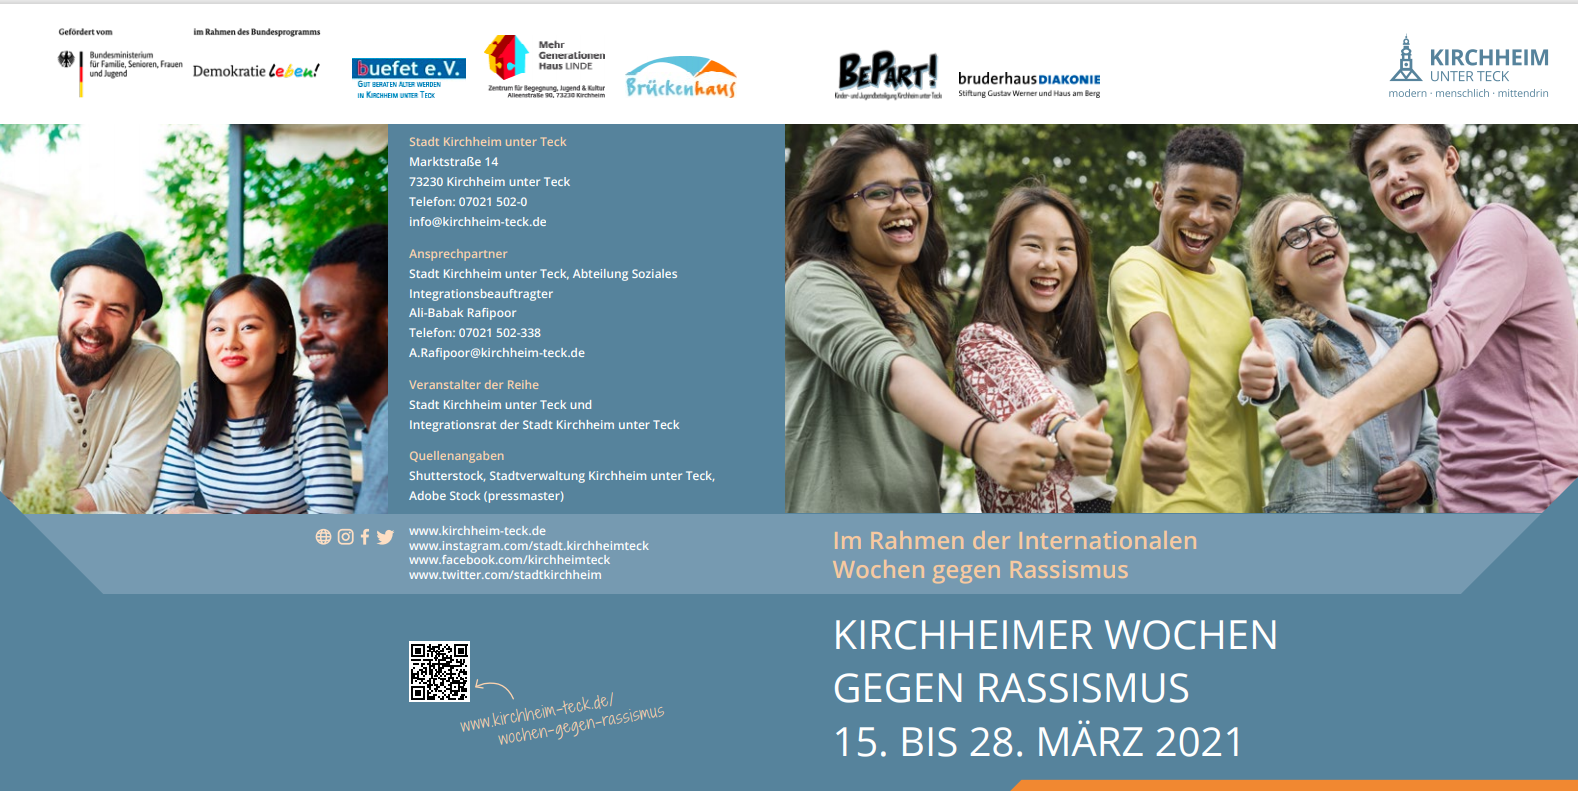 Kirchheimer Wochen gegen Rassismus: Malaktion "So bunt ist Kirchheim" und zwei Plakataktionen